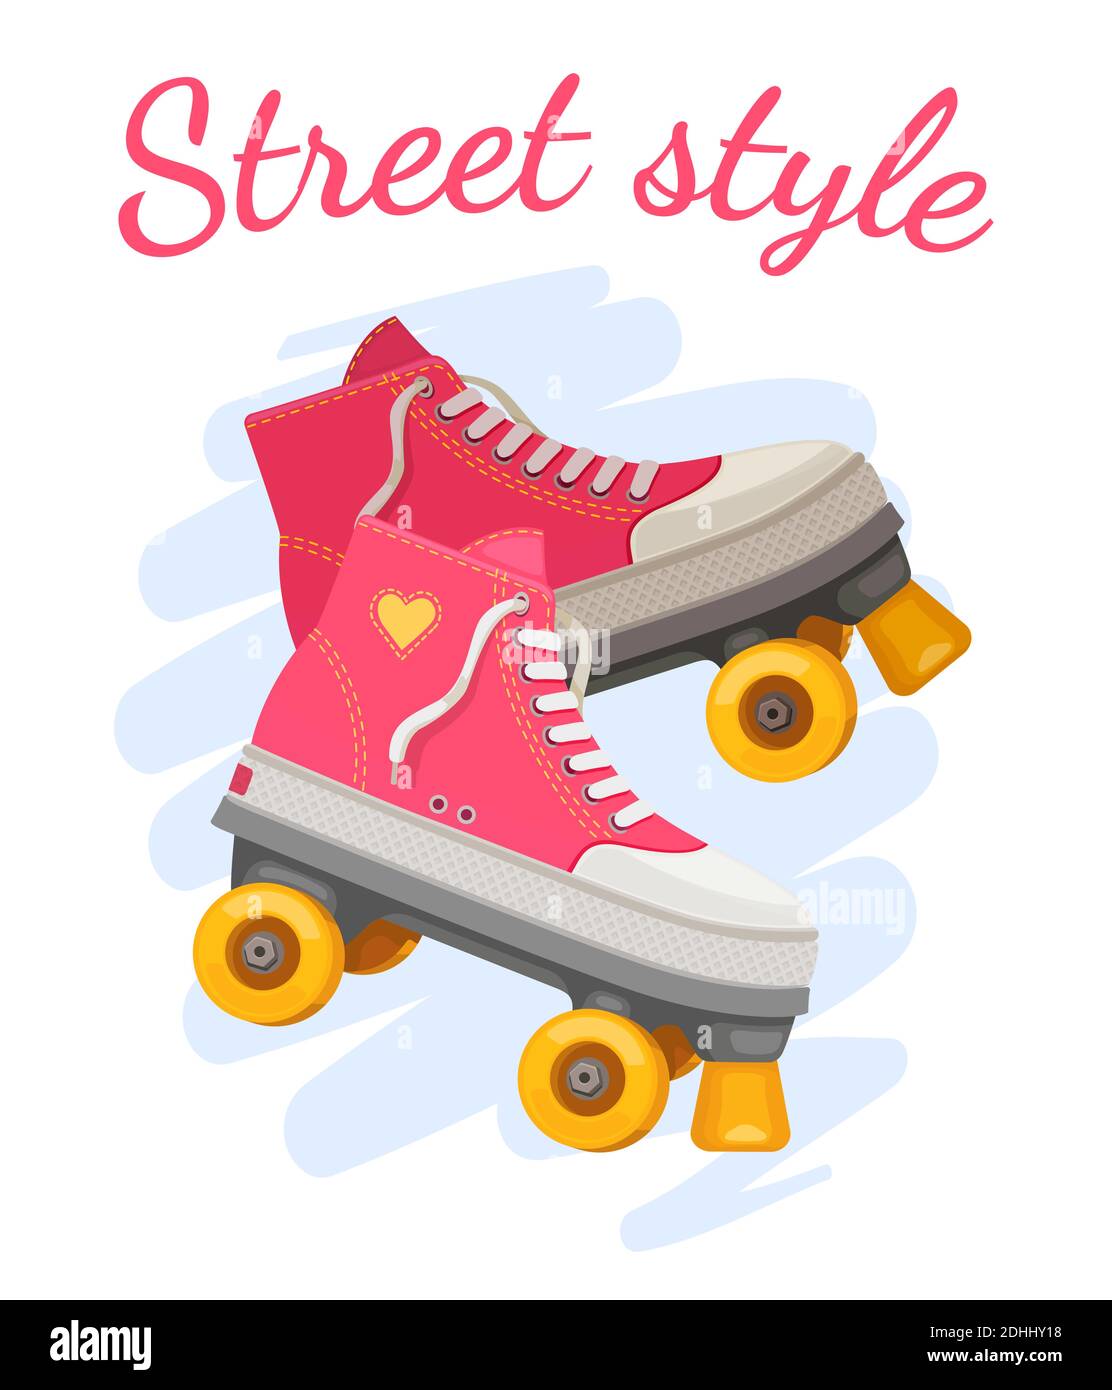 Rollerdruck für Mädchen. Trendige pinke Rollers Skate mit Herz und Slogan Street Style. Retro Sommer Mädchen Mode. Positive T-Shirt Vektor-Design Stock Vektor